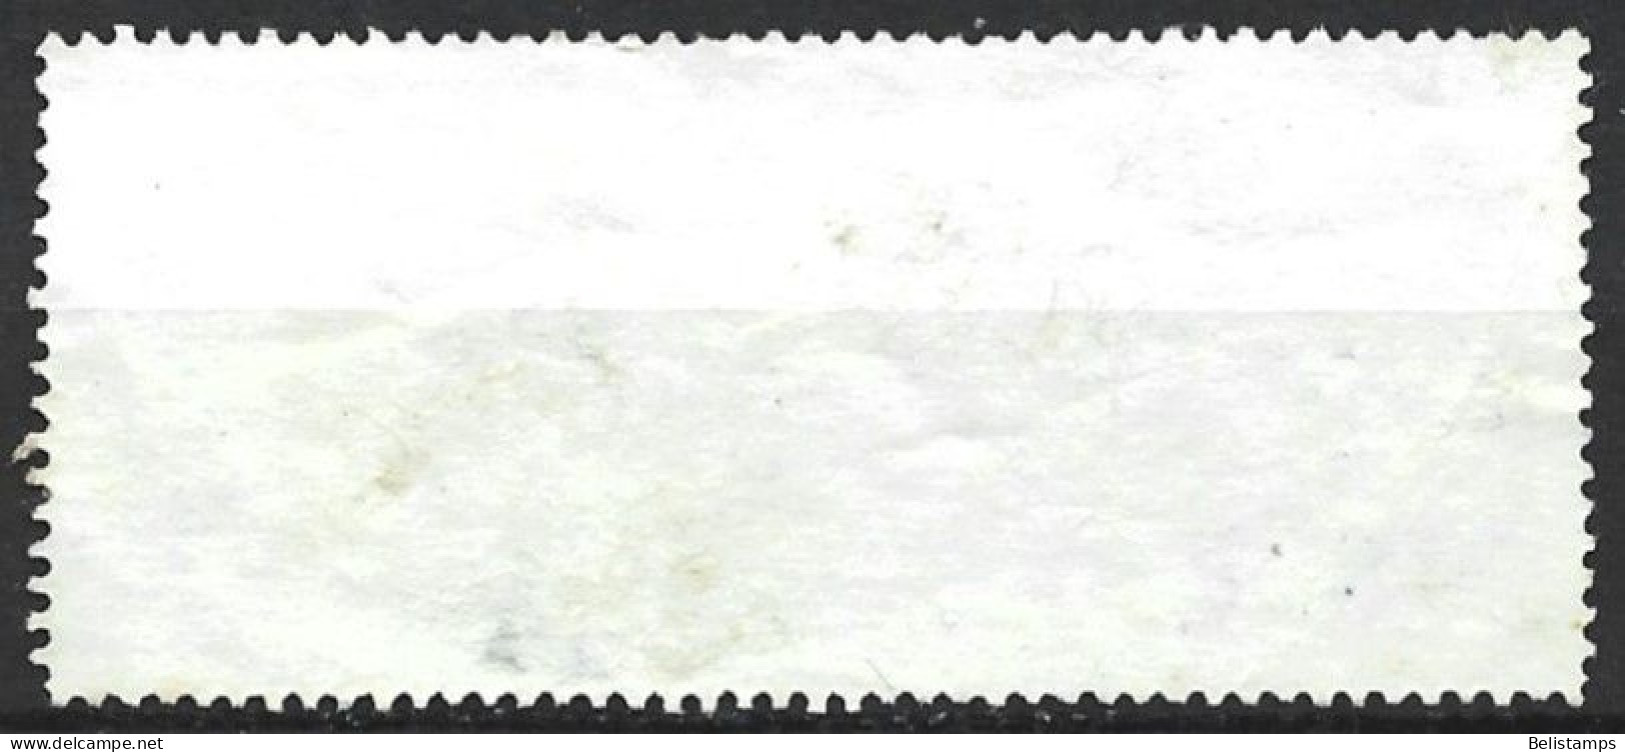 Argentina 1989. Scott #1648 (U) El Palmar, National Park - Used Stamps